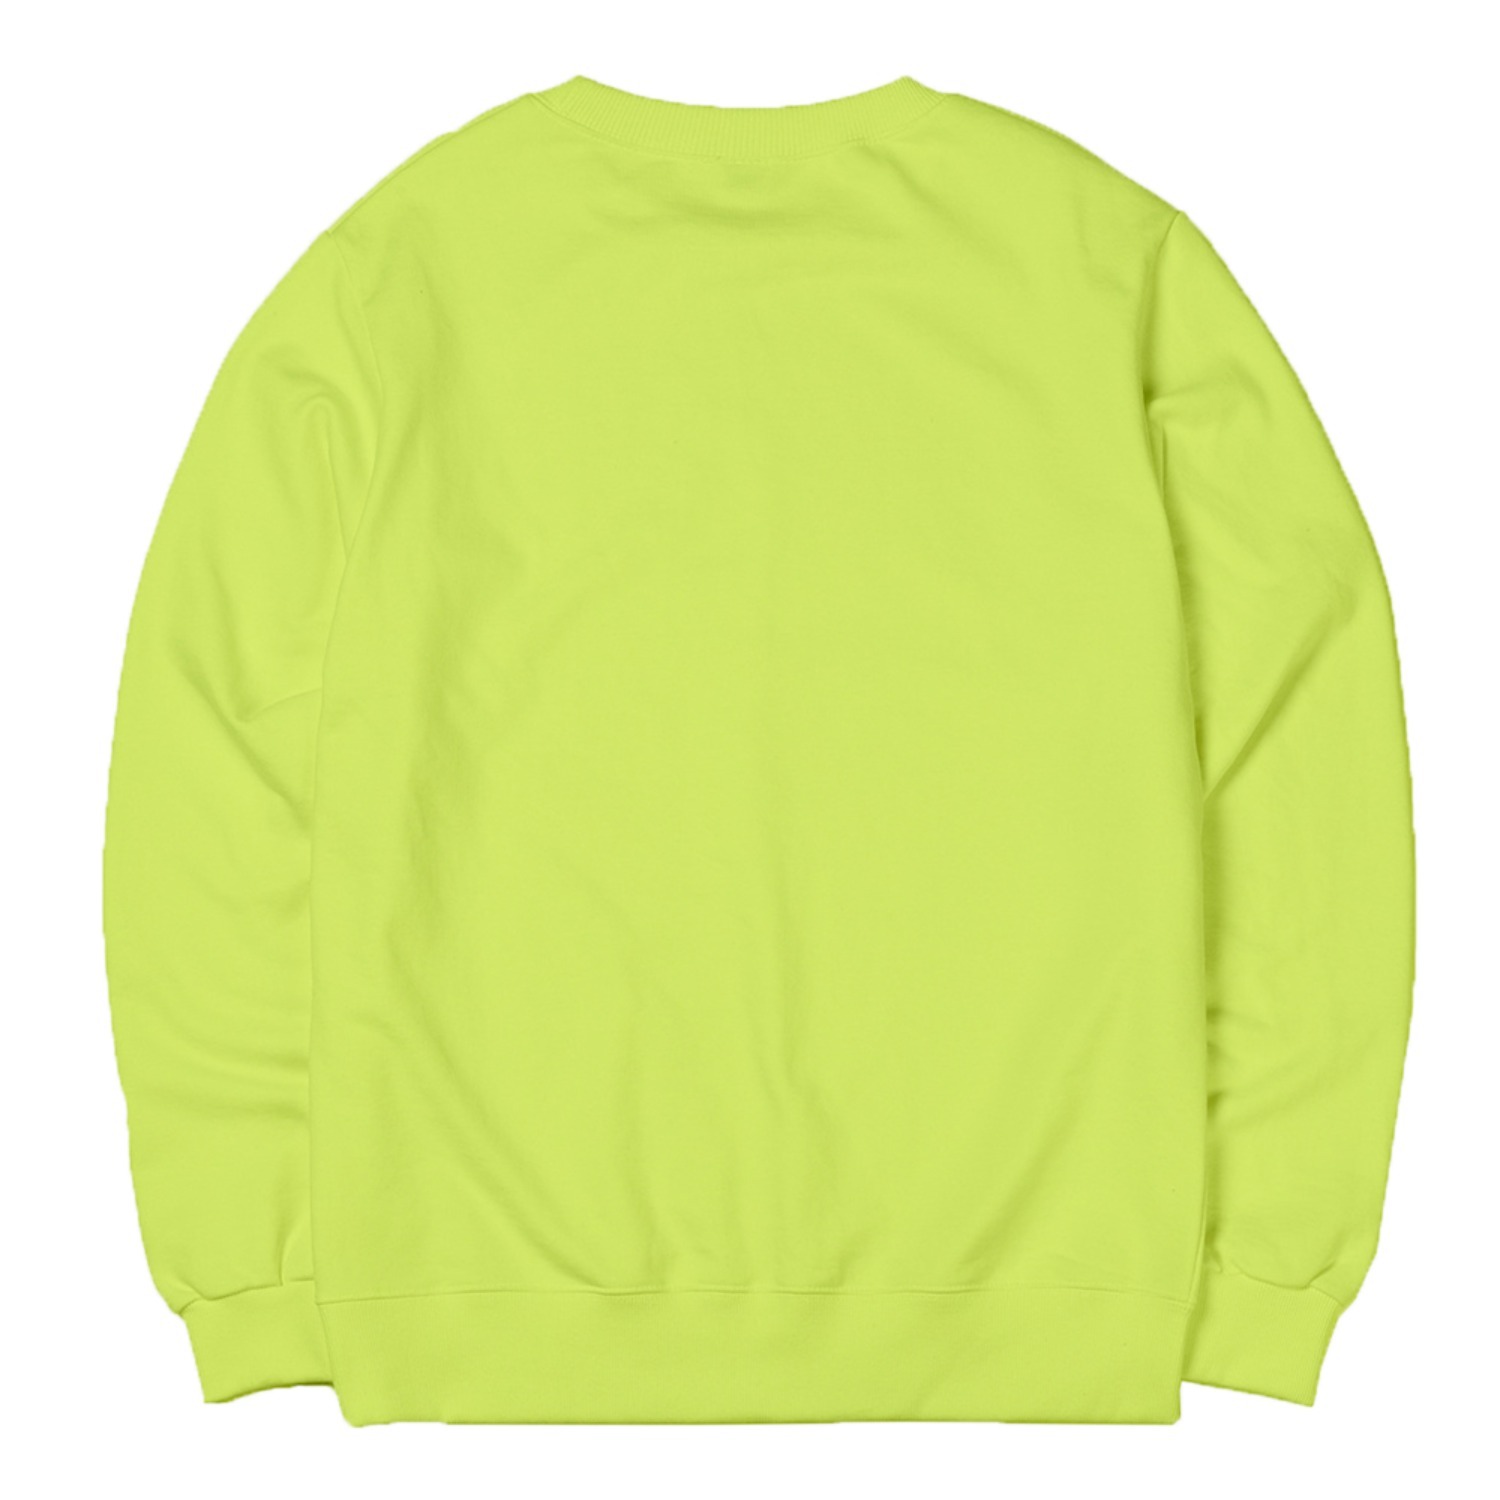 사자성어 맨투맨 라임Idiom sweatshirt (lime)